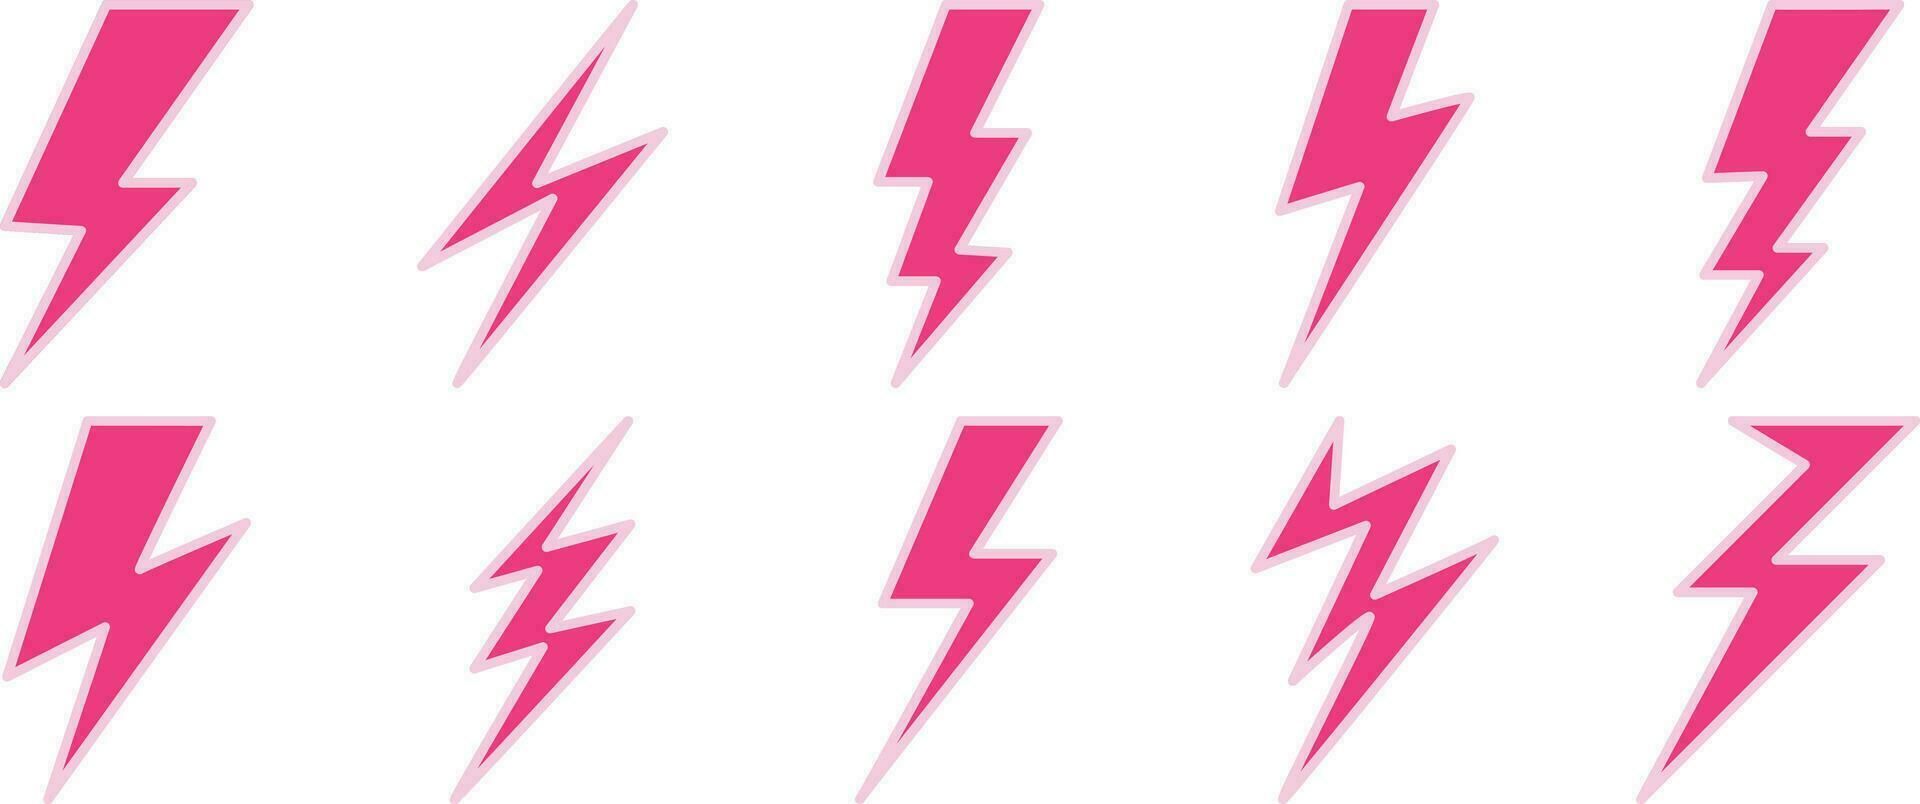 conjunto de relámpago tornillo, electricidad, y tormenta íconos en rosado en un blanco antecedentes. vector ilustración.